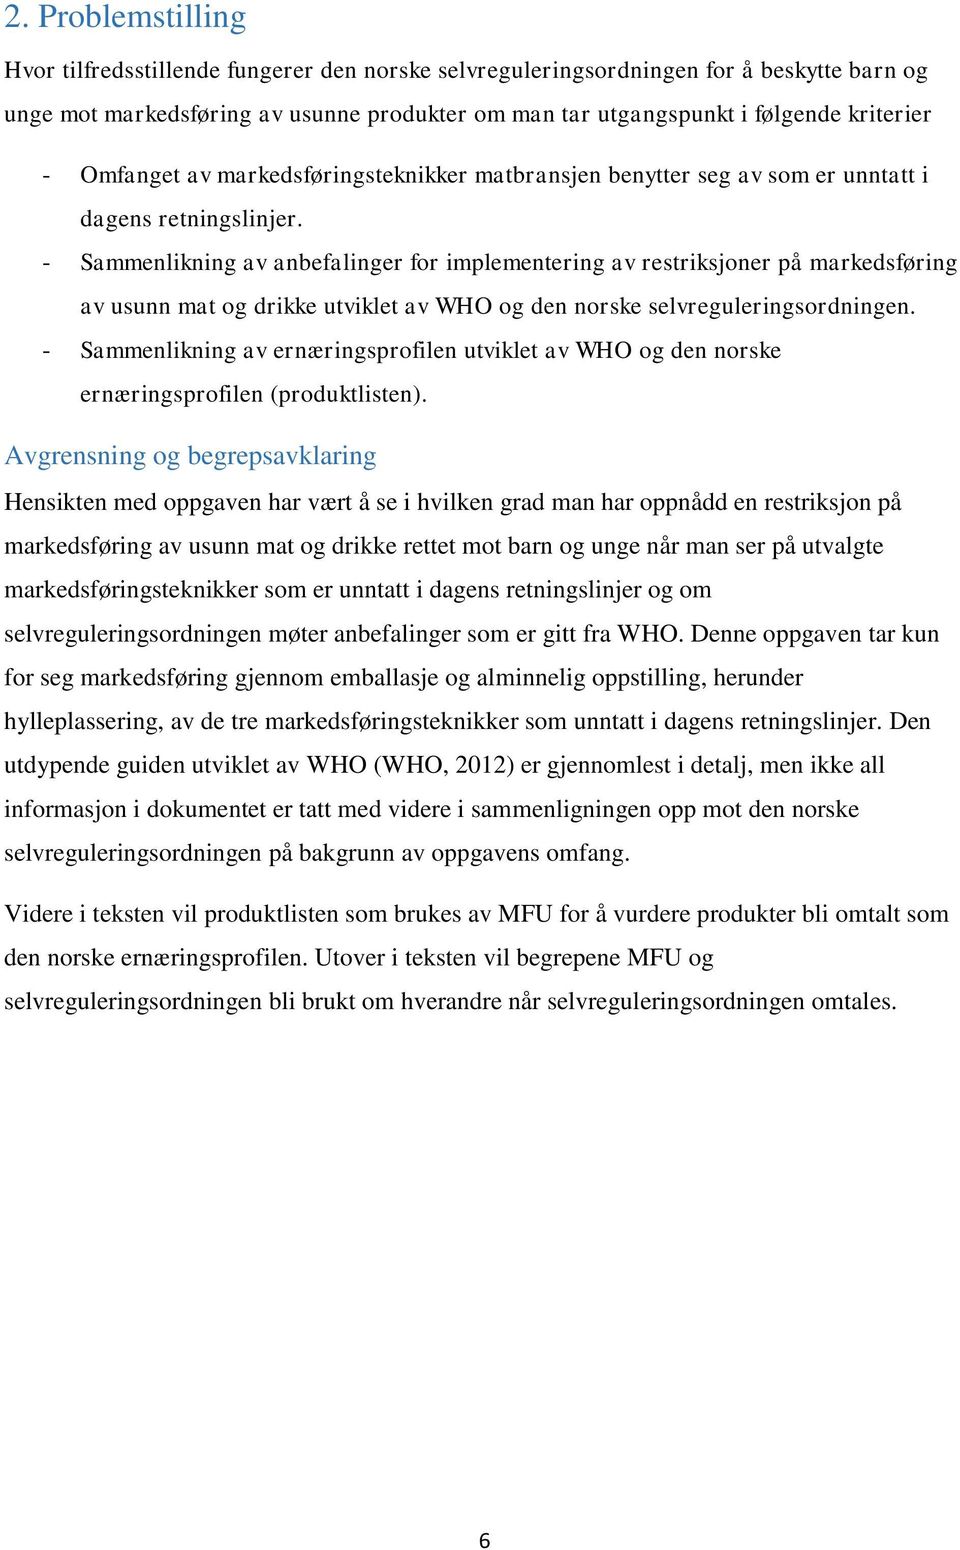 - Sammenlikning av anbefalinger for implementering av restriksjoner på markedsføring av usunn mat og drikke utviklet av WHO og den norske selvreguleringsordningen.